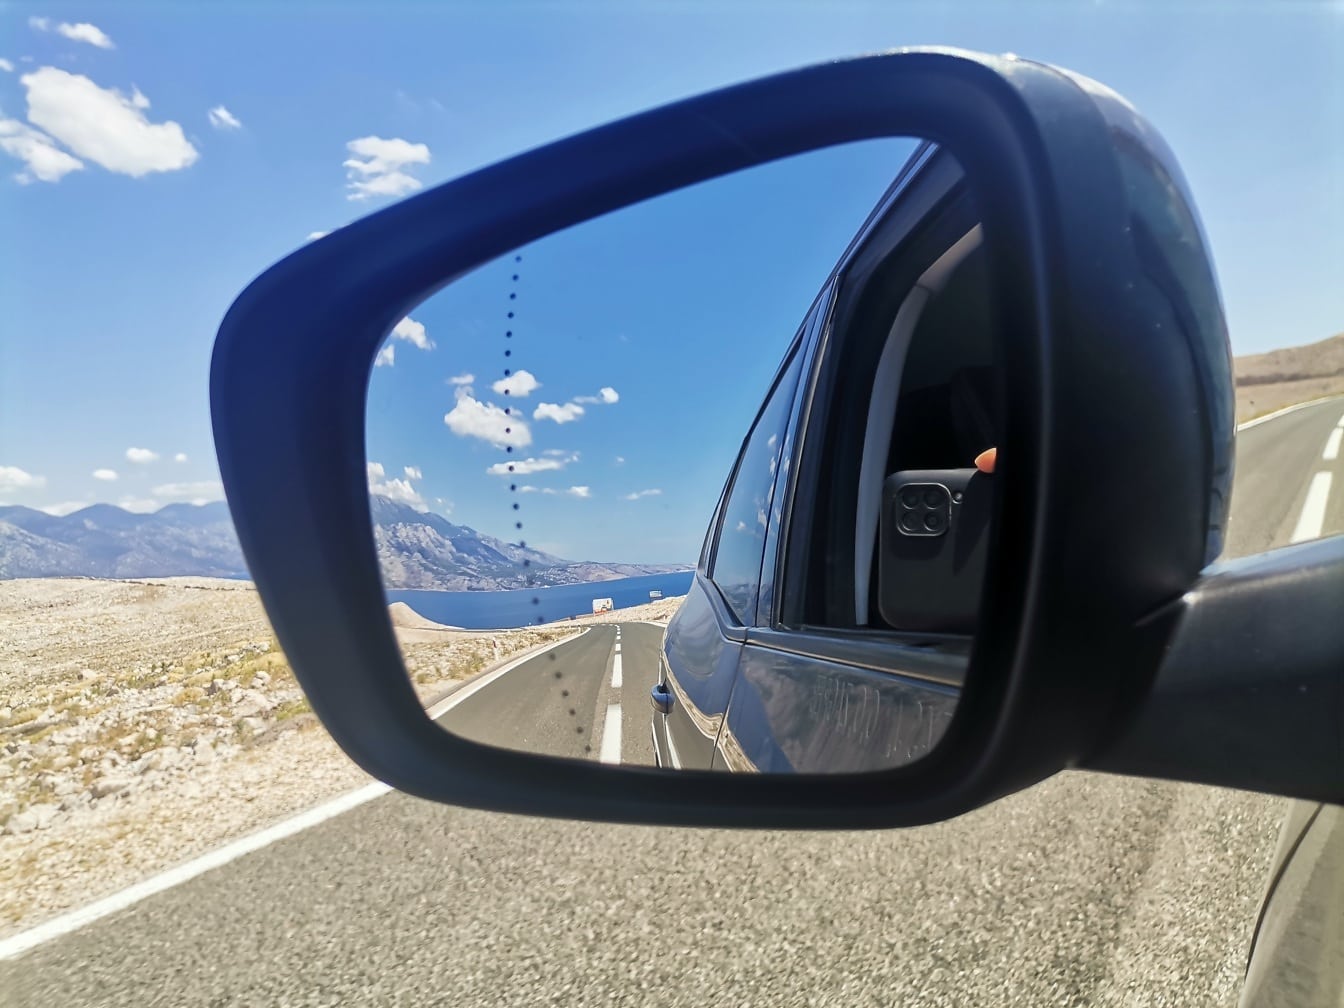 Reflejo de la carretera de asfalto y del paisaje marino en el espejo del coche